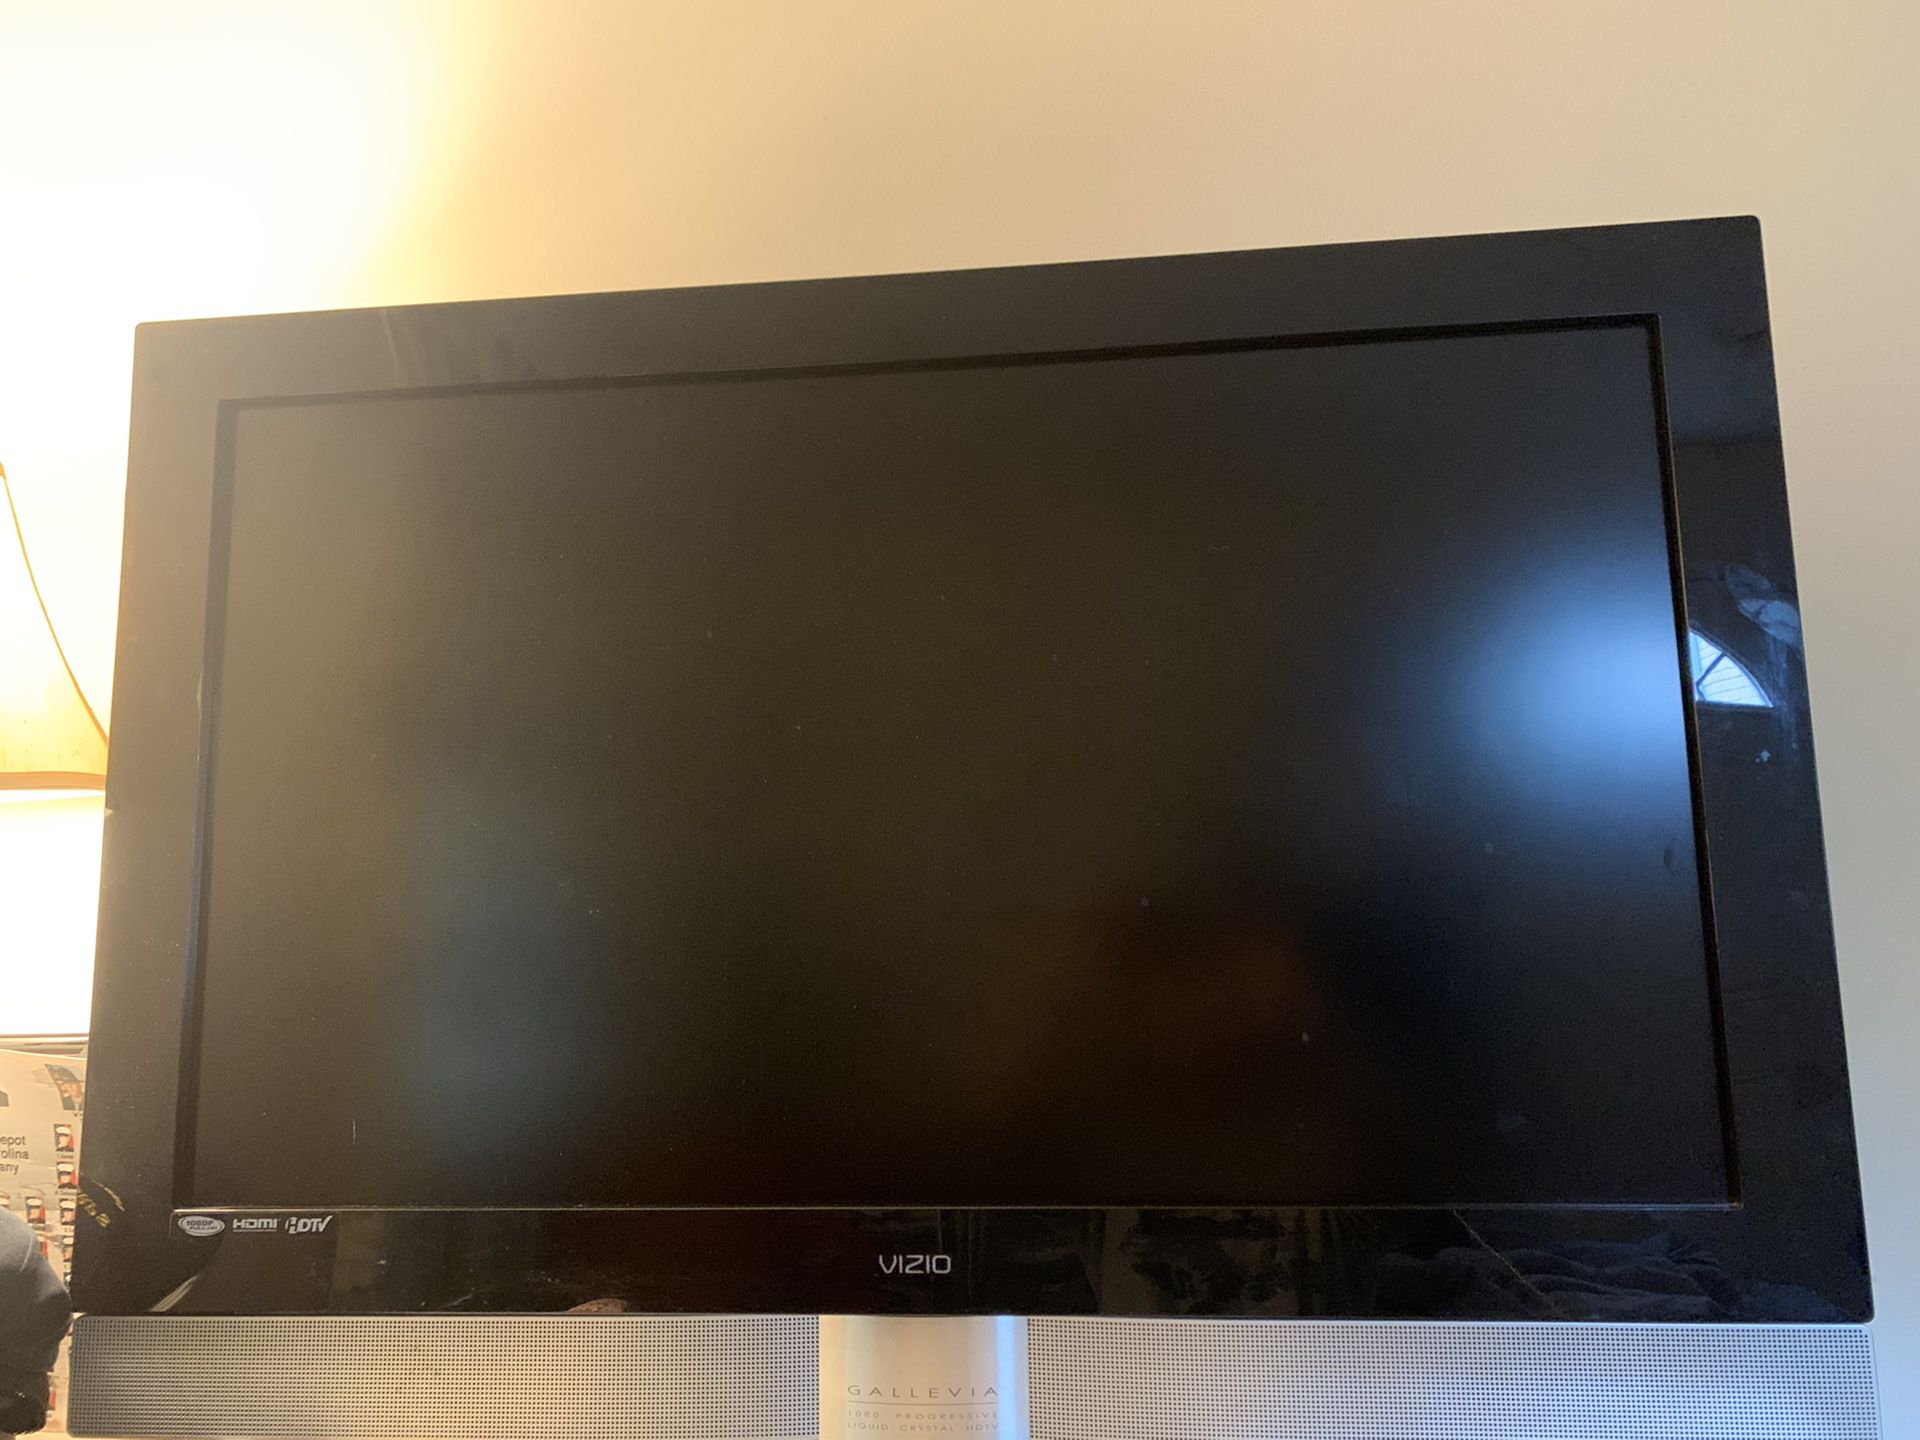 Vizio Gallevia LCD 42 inch plasma TV, perfect condition